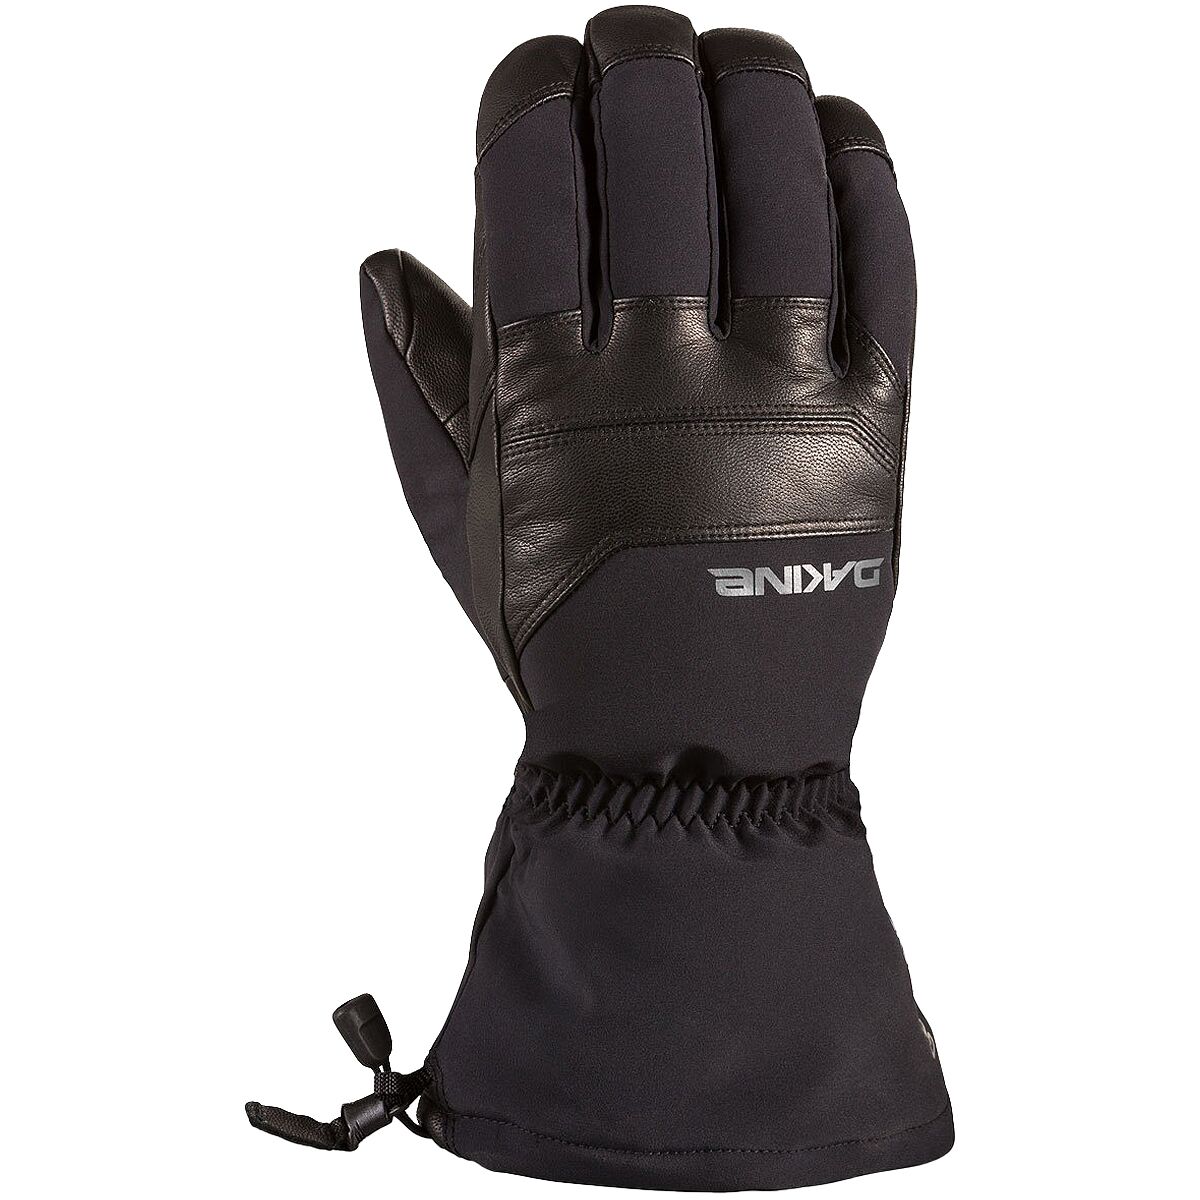 DAKINE Excursion Glove - Men's Black